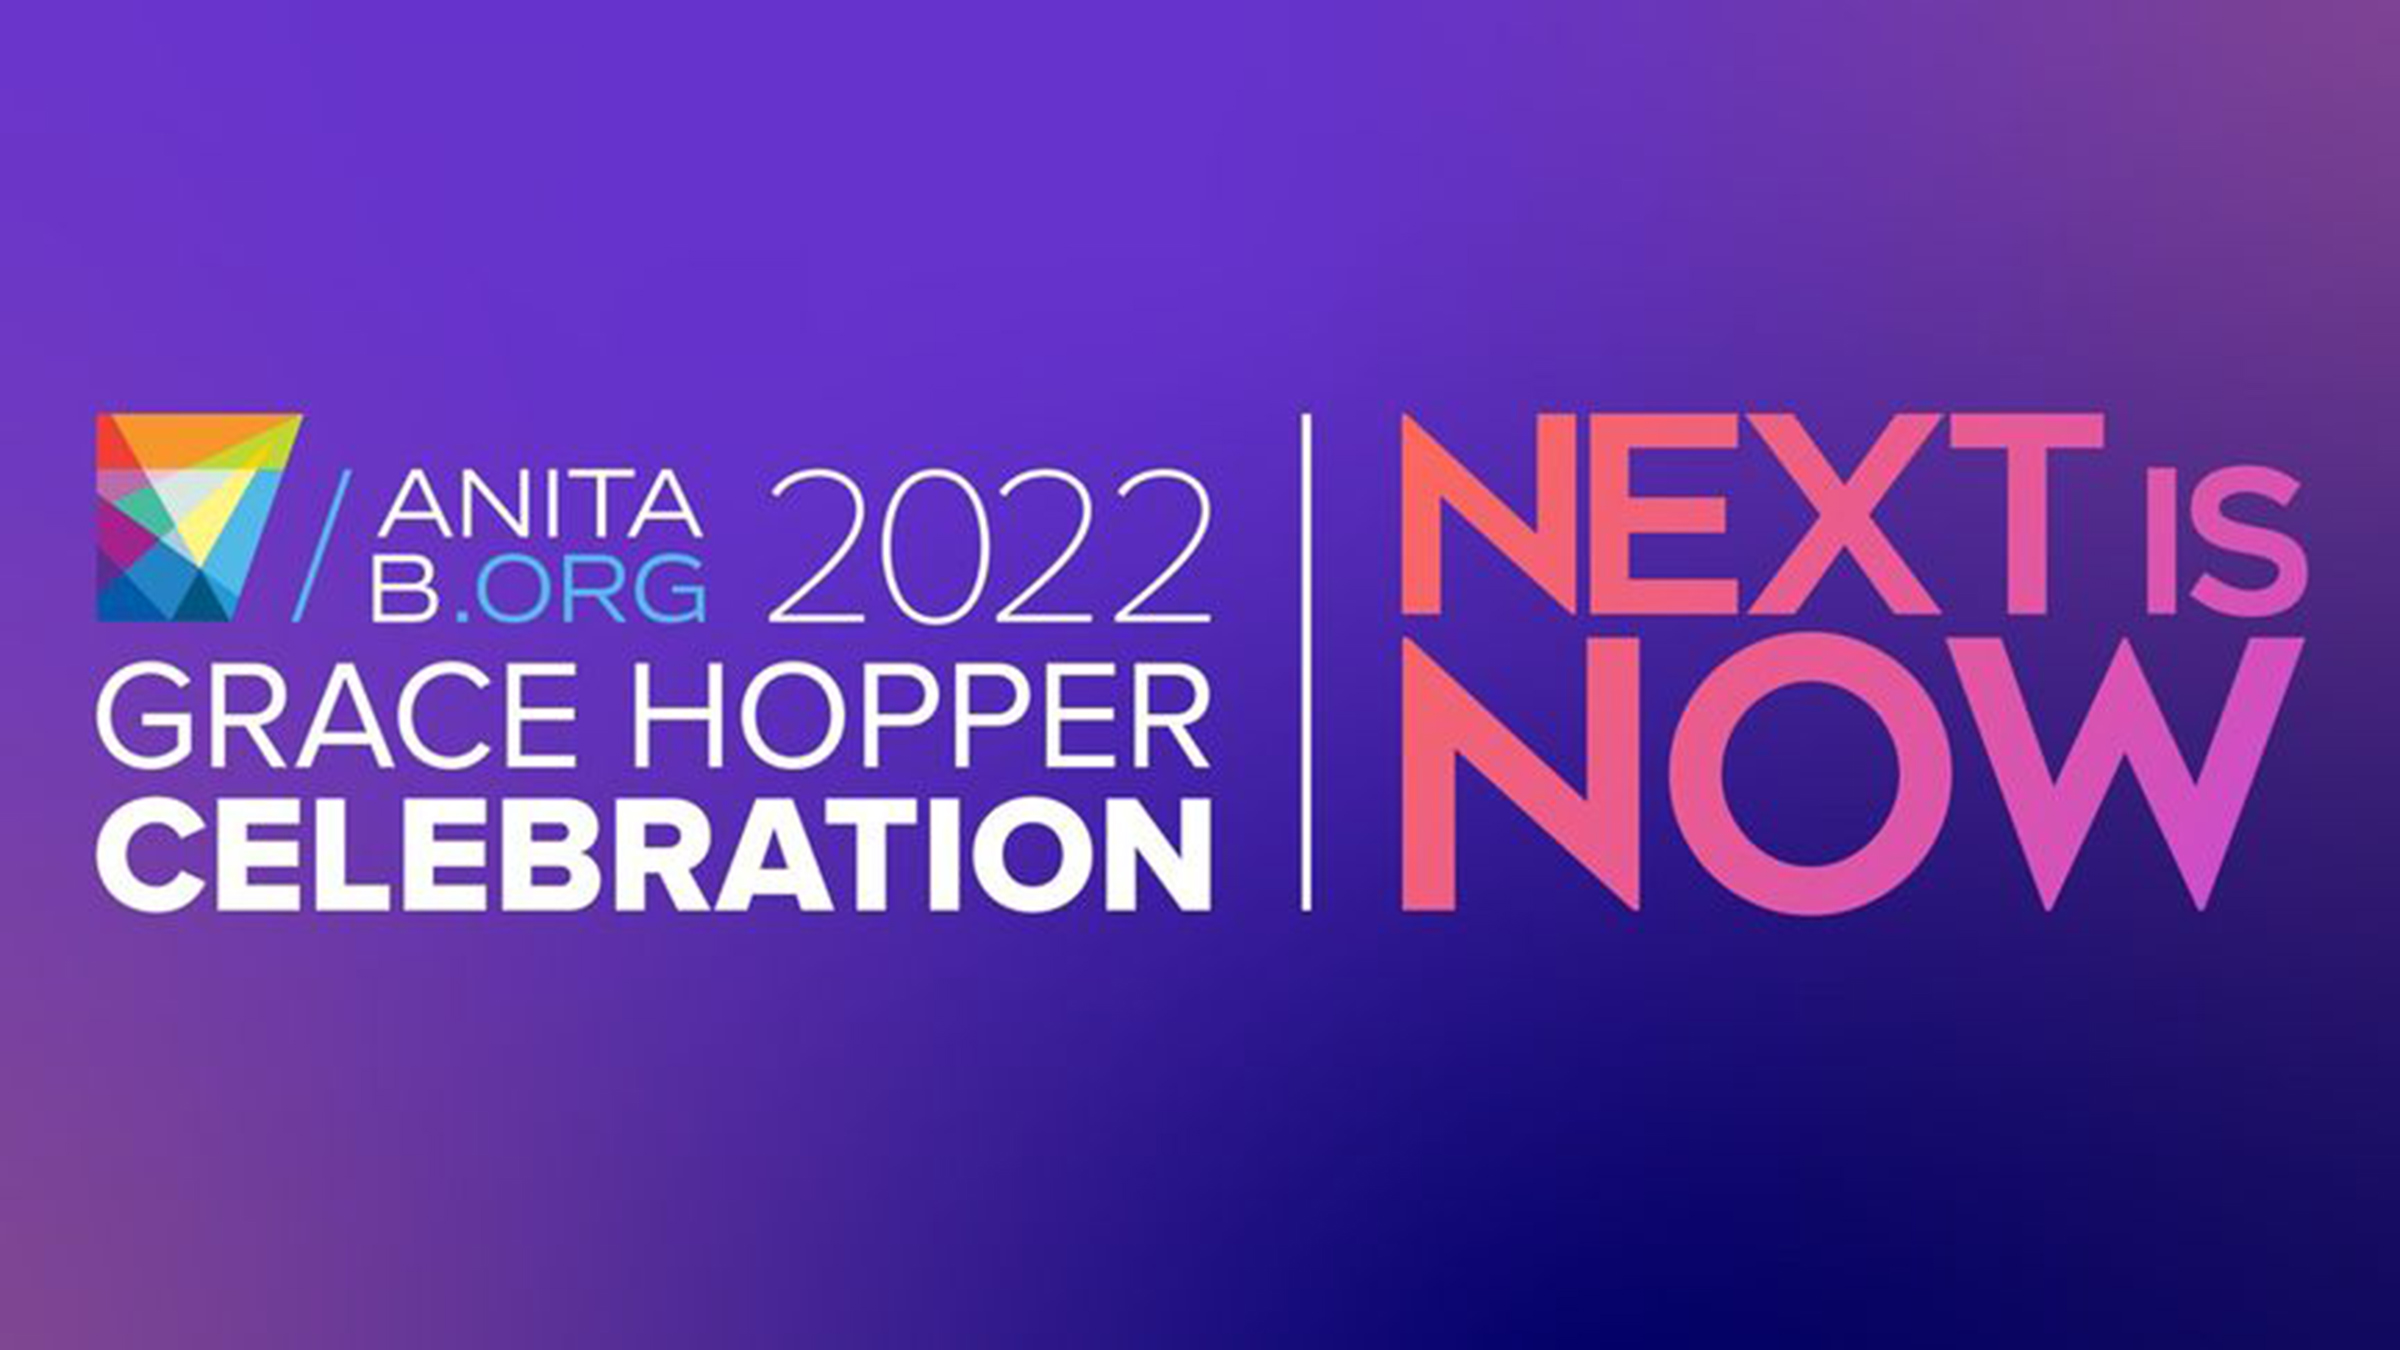 Grace Hopper Celebration 2022